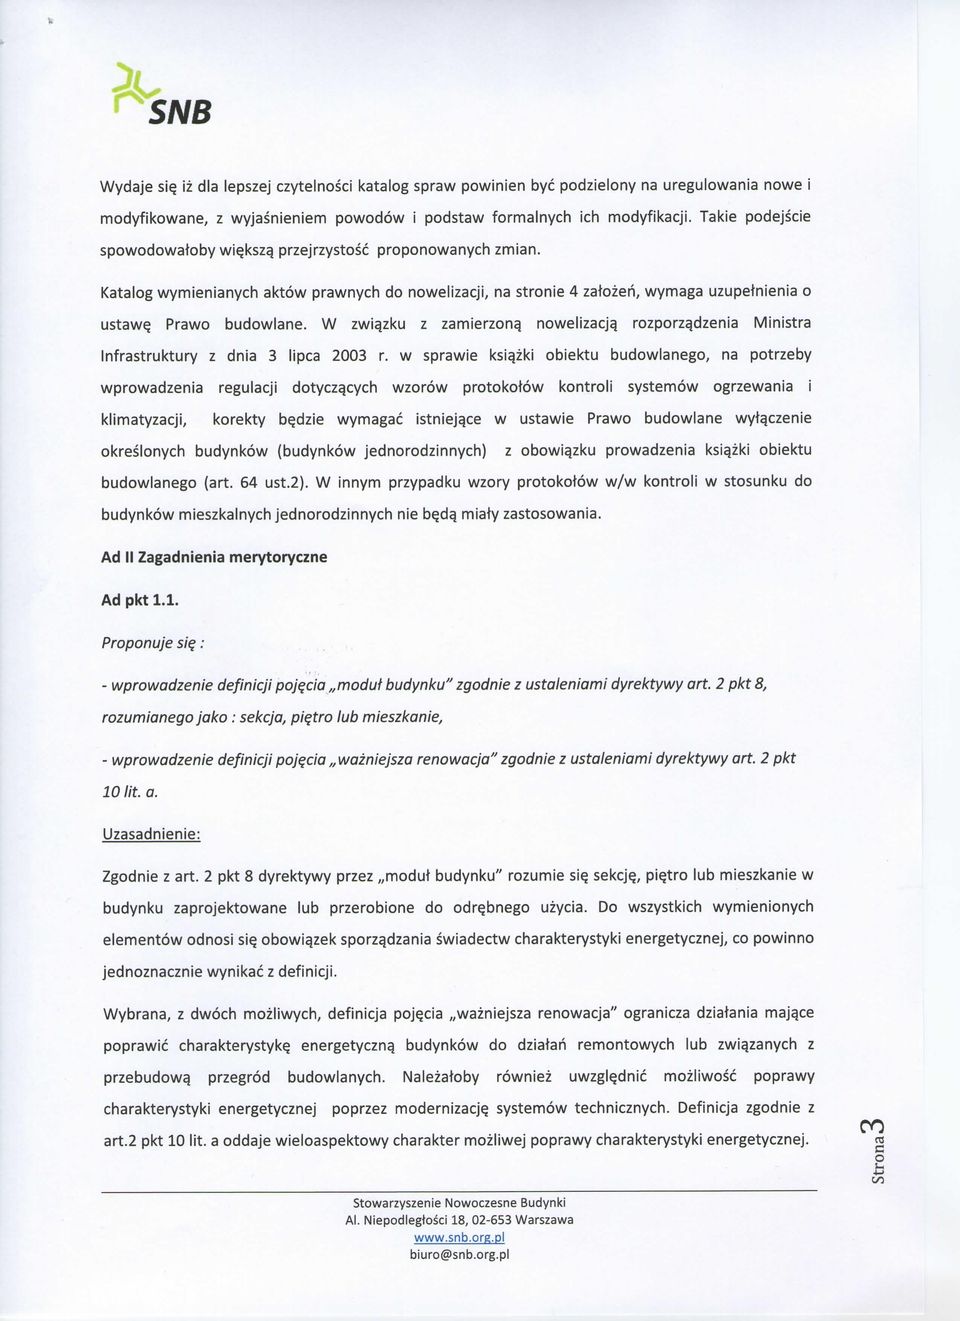 W zwiqzku z zamierzonq nowelizacjq rozporza,dzenia Ministra Infrastruktury z dnia 3 lipca 2003 r.